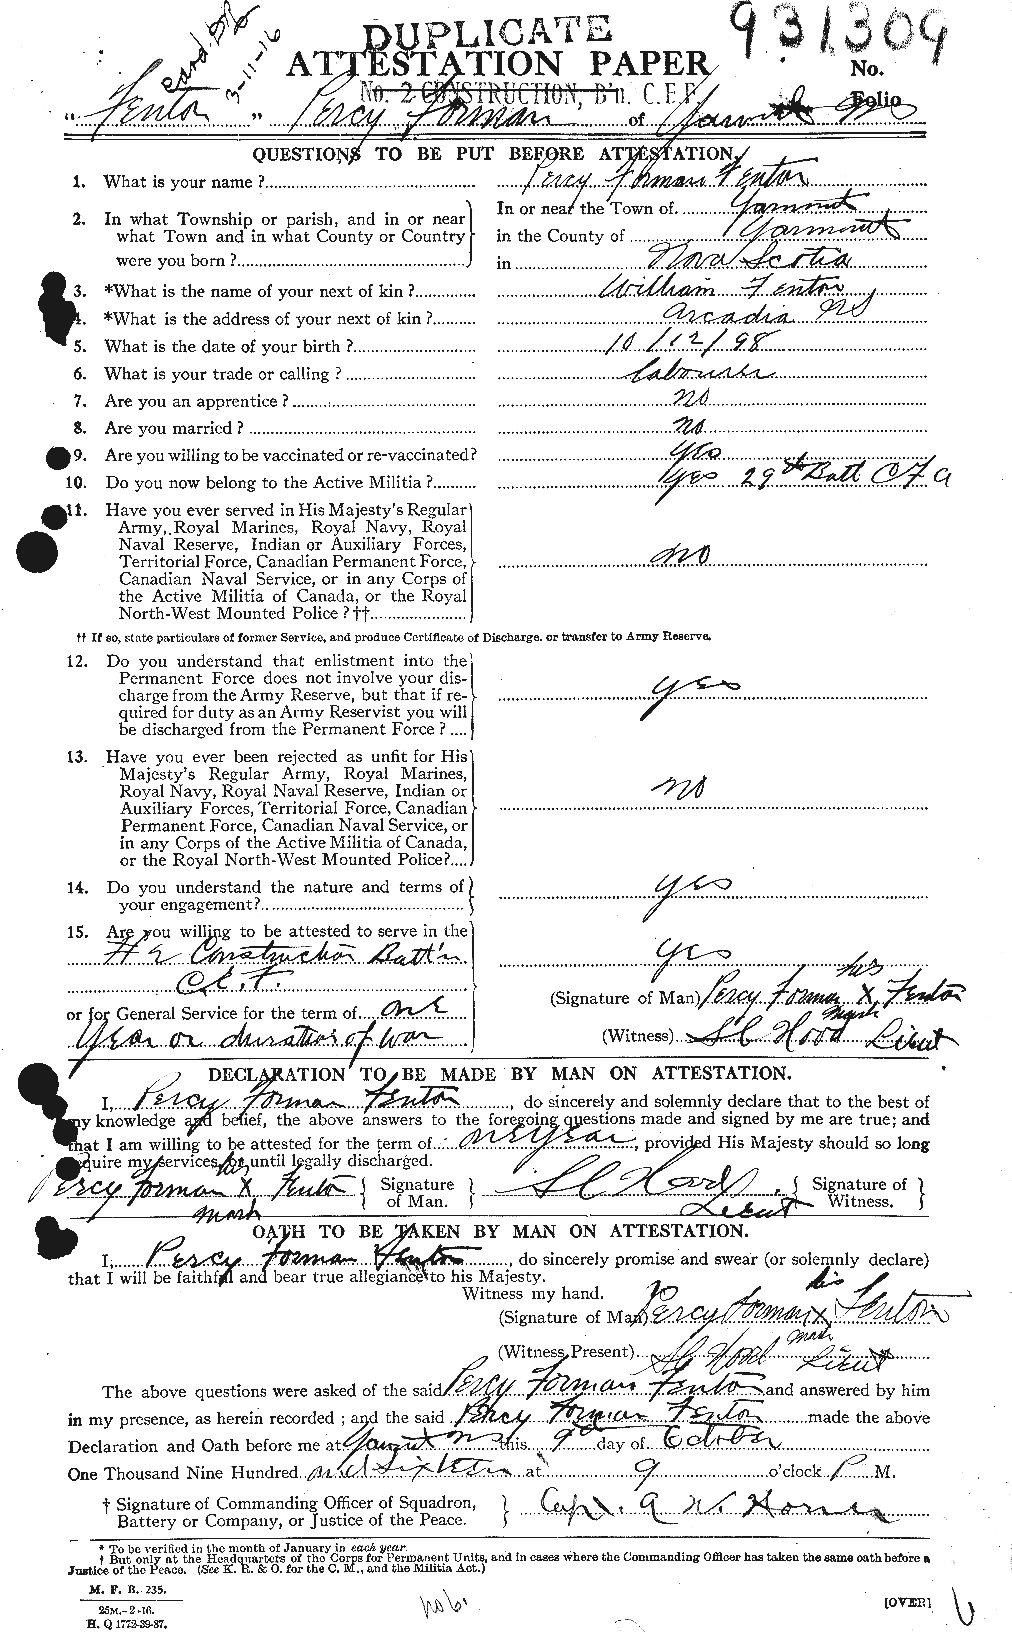 Dossiers du Personnel de la Première Guerre mondiale - CEC 318539a